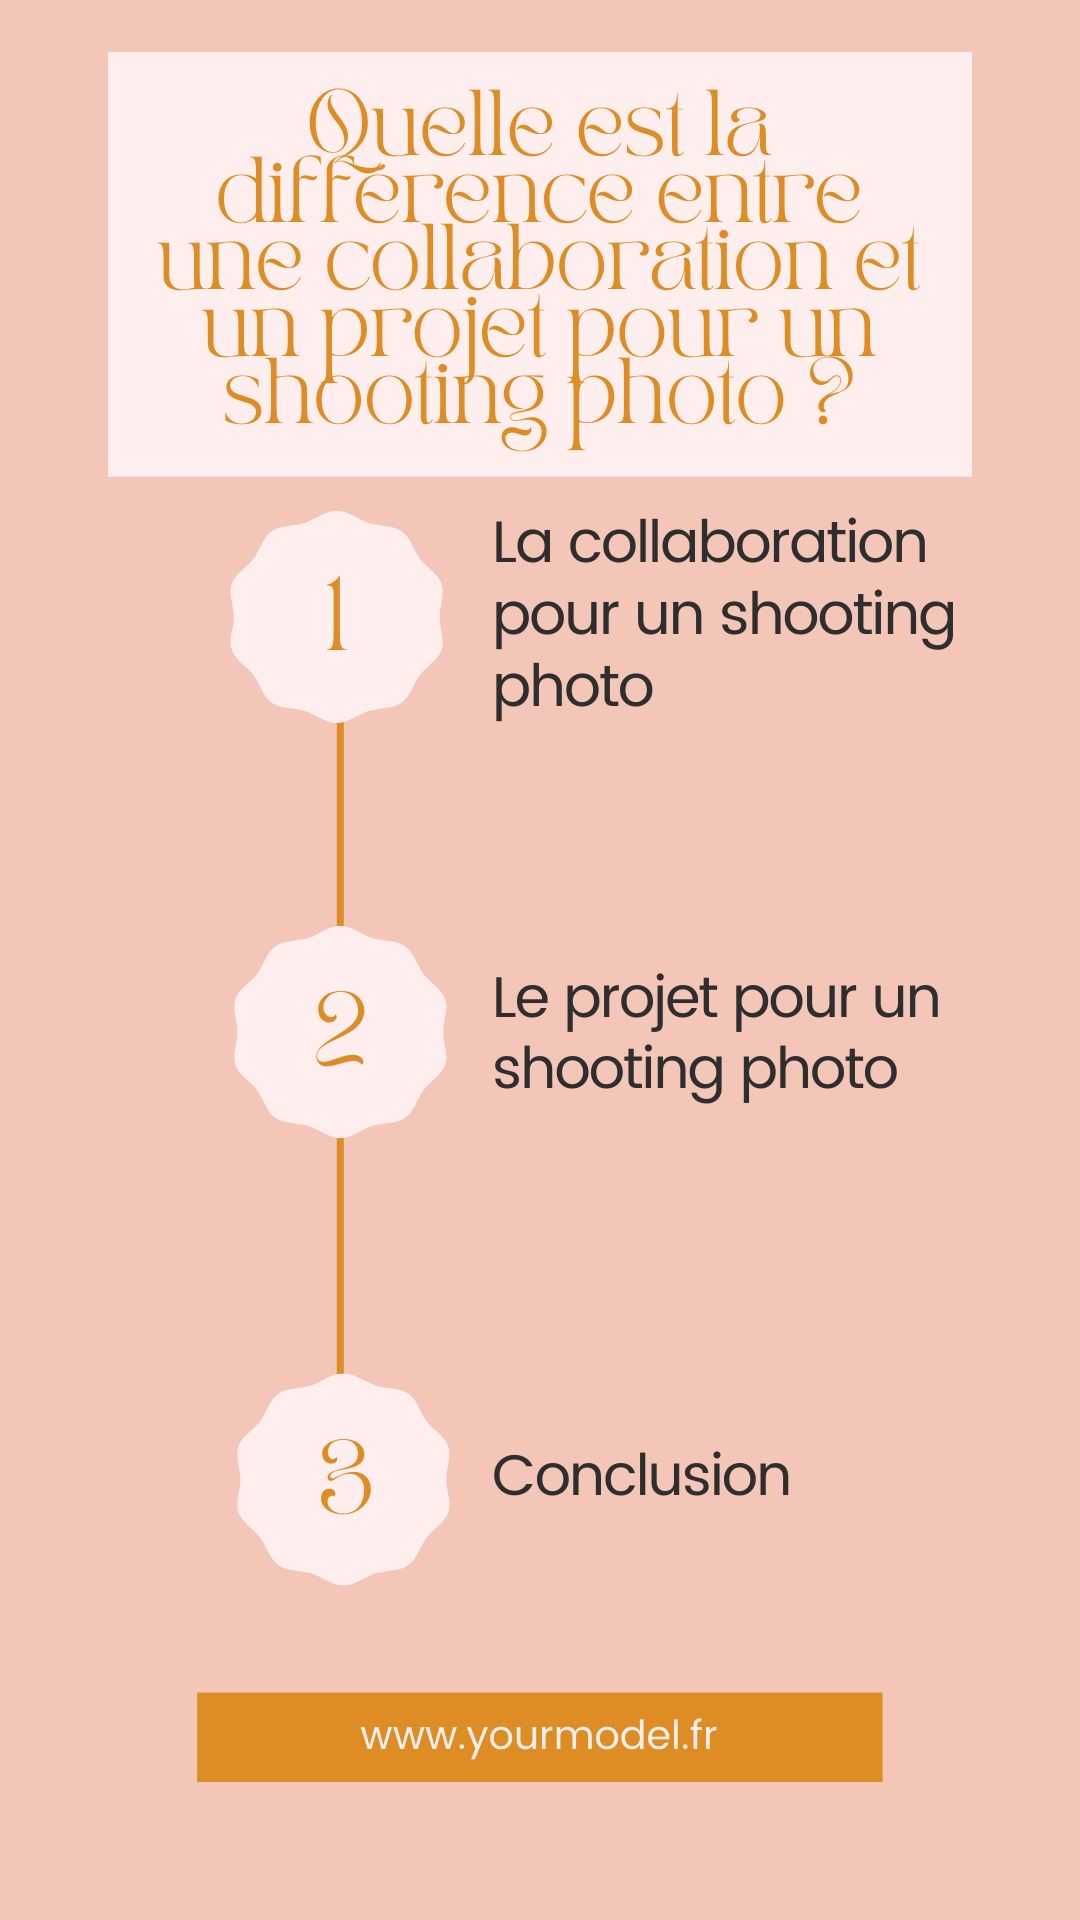 différence entre une collaboration et un projet pour shooting photo